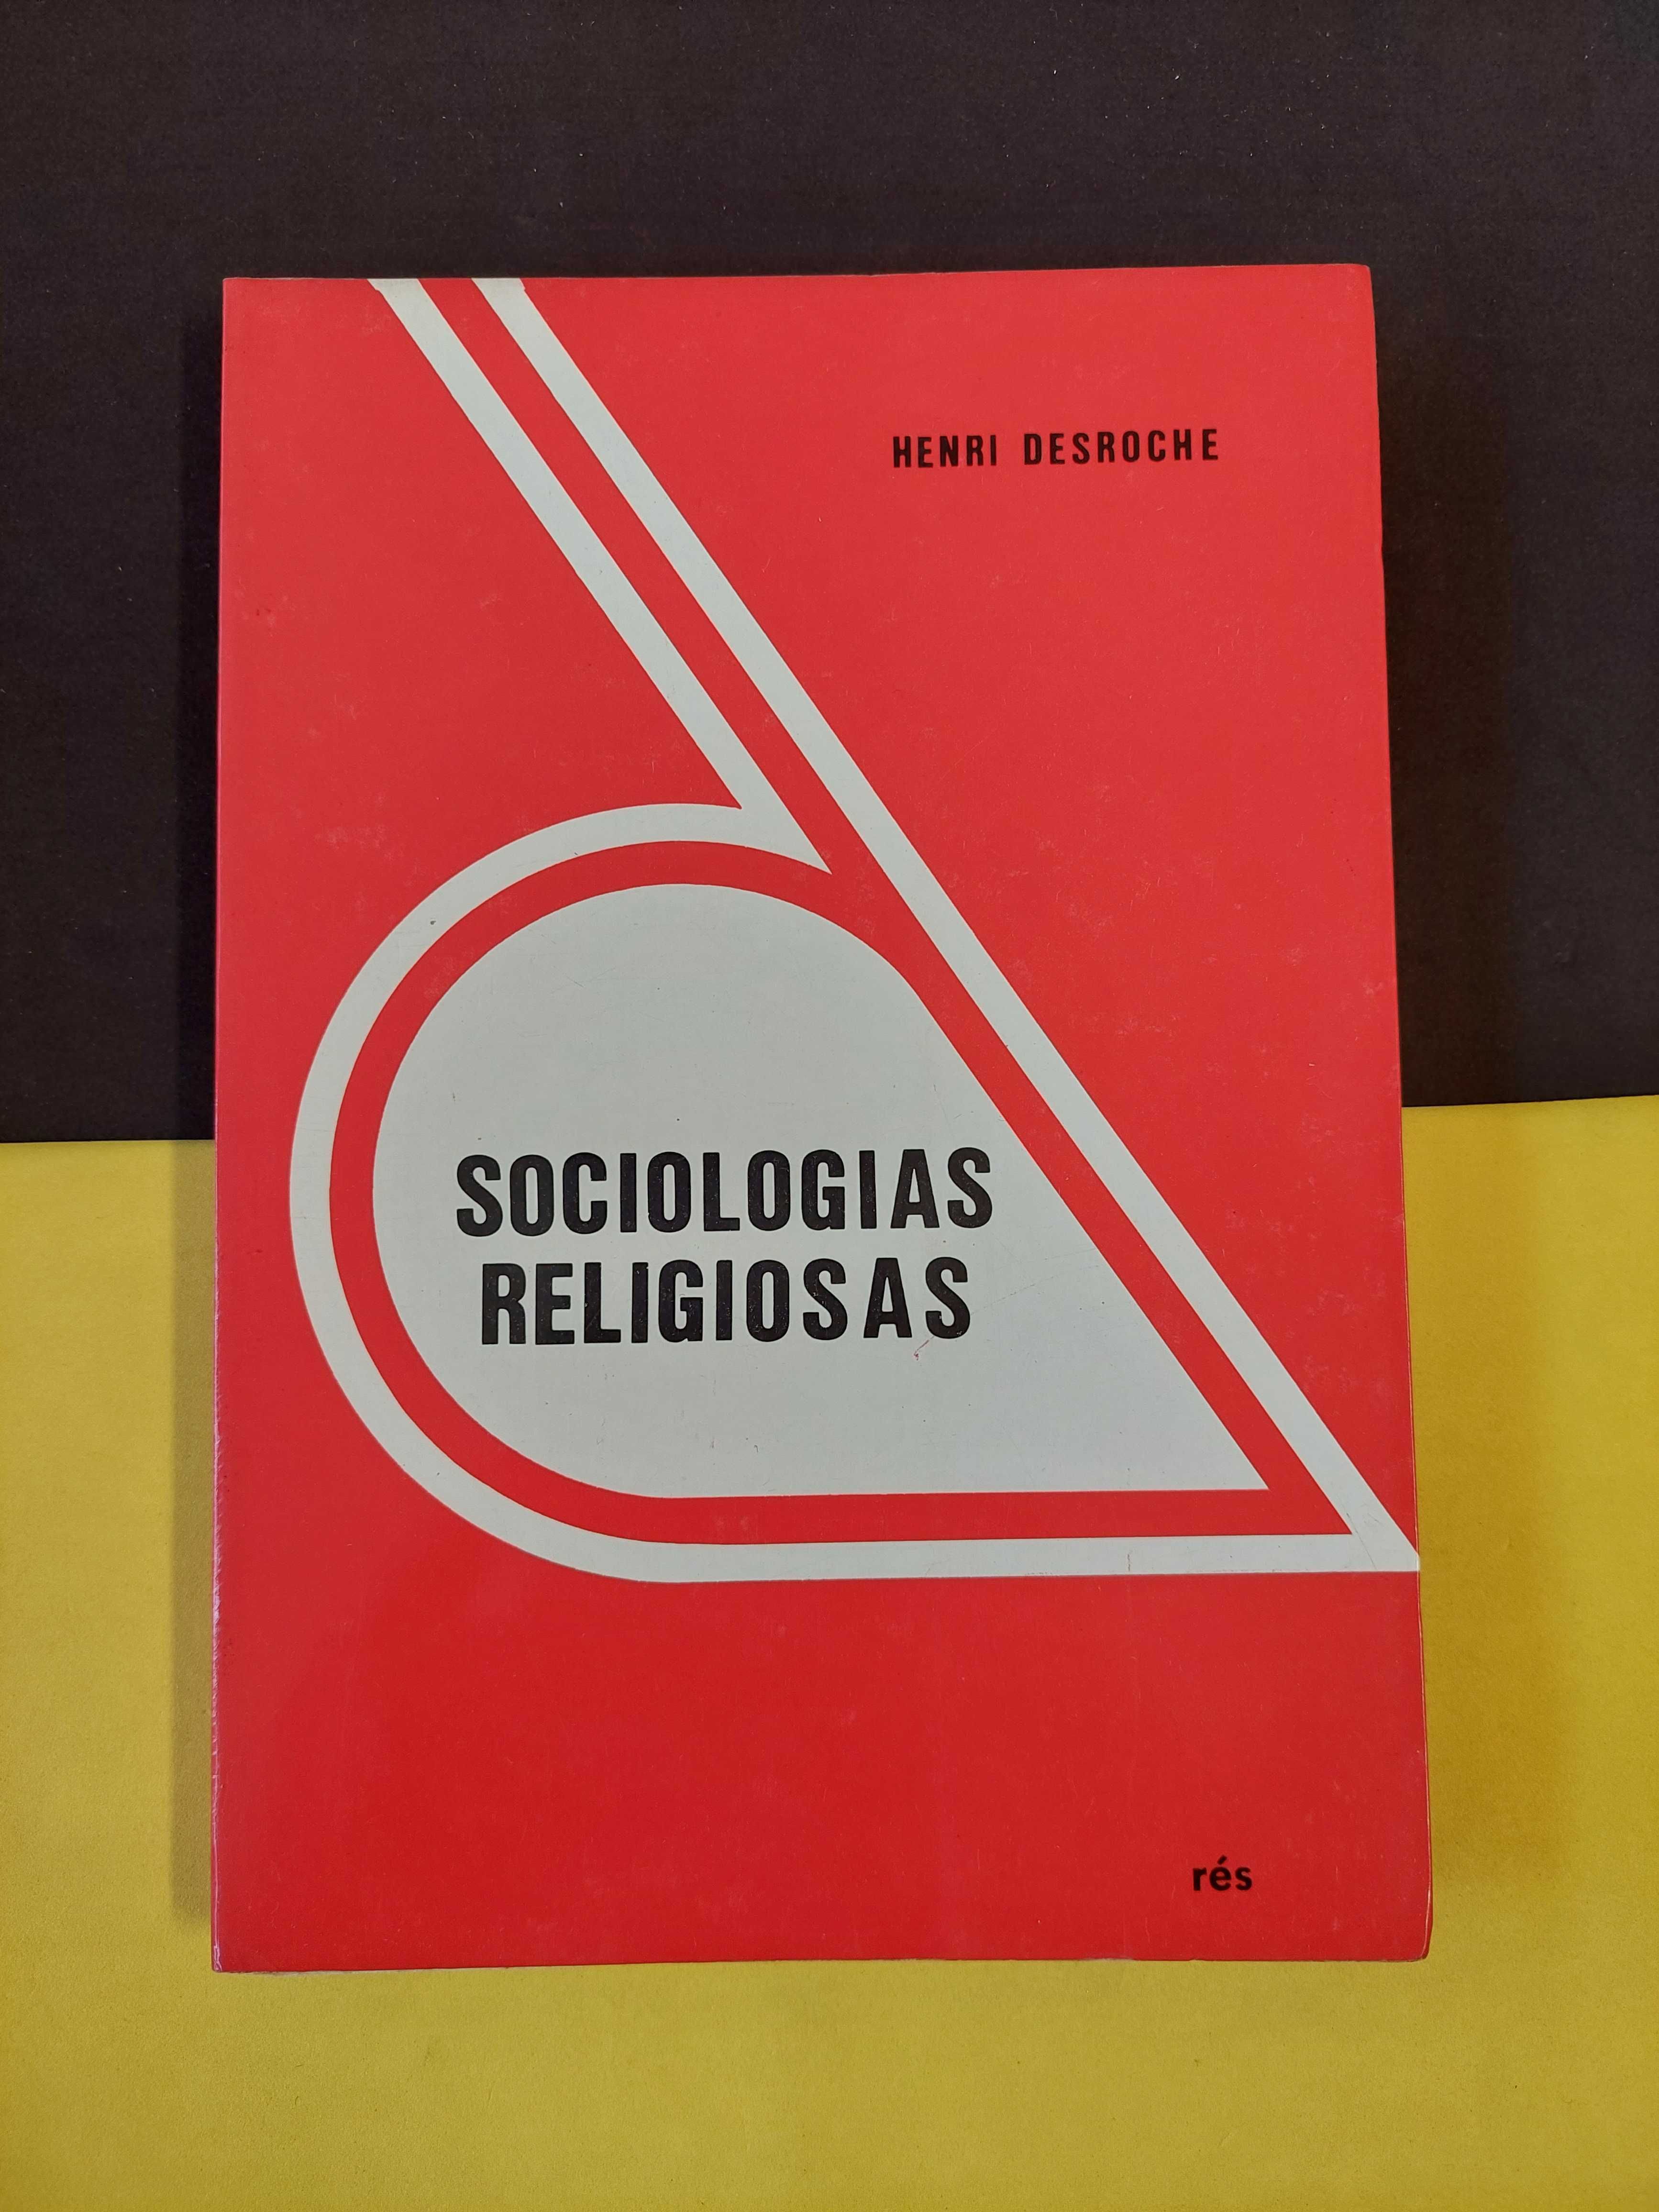 Henri Desroche - Sociologias religiosas